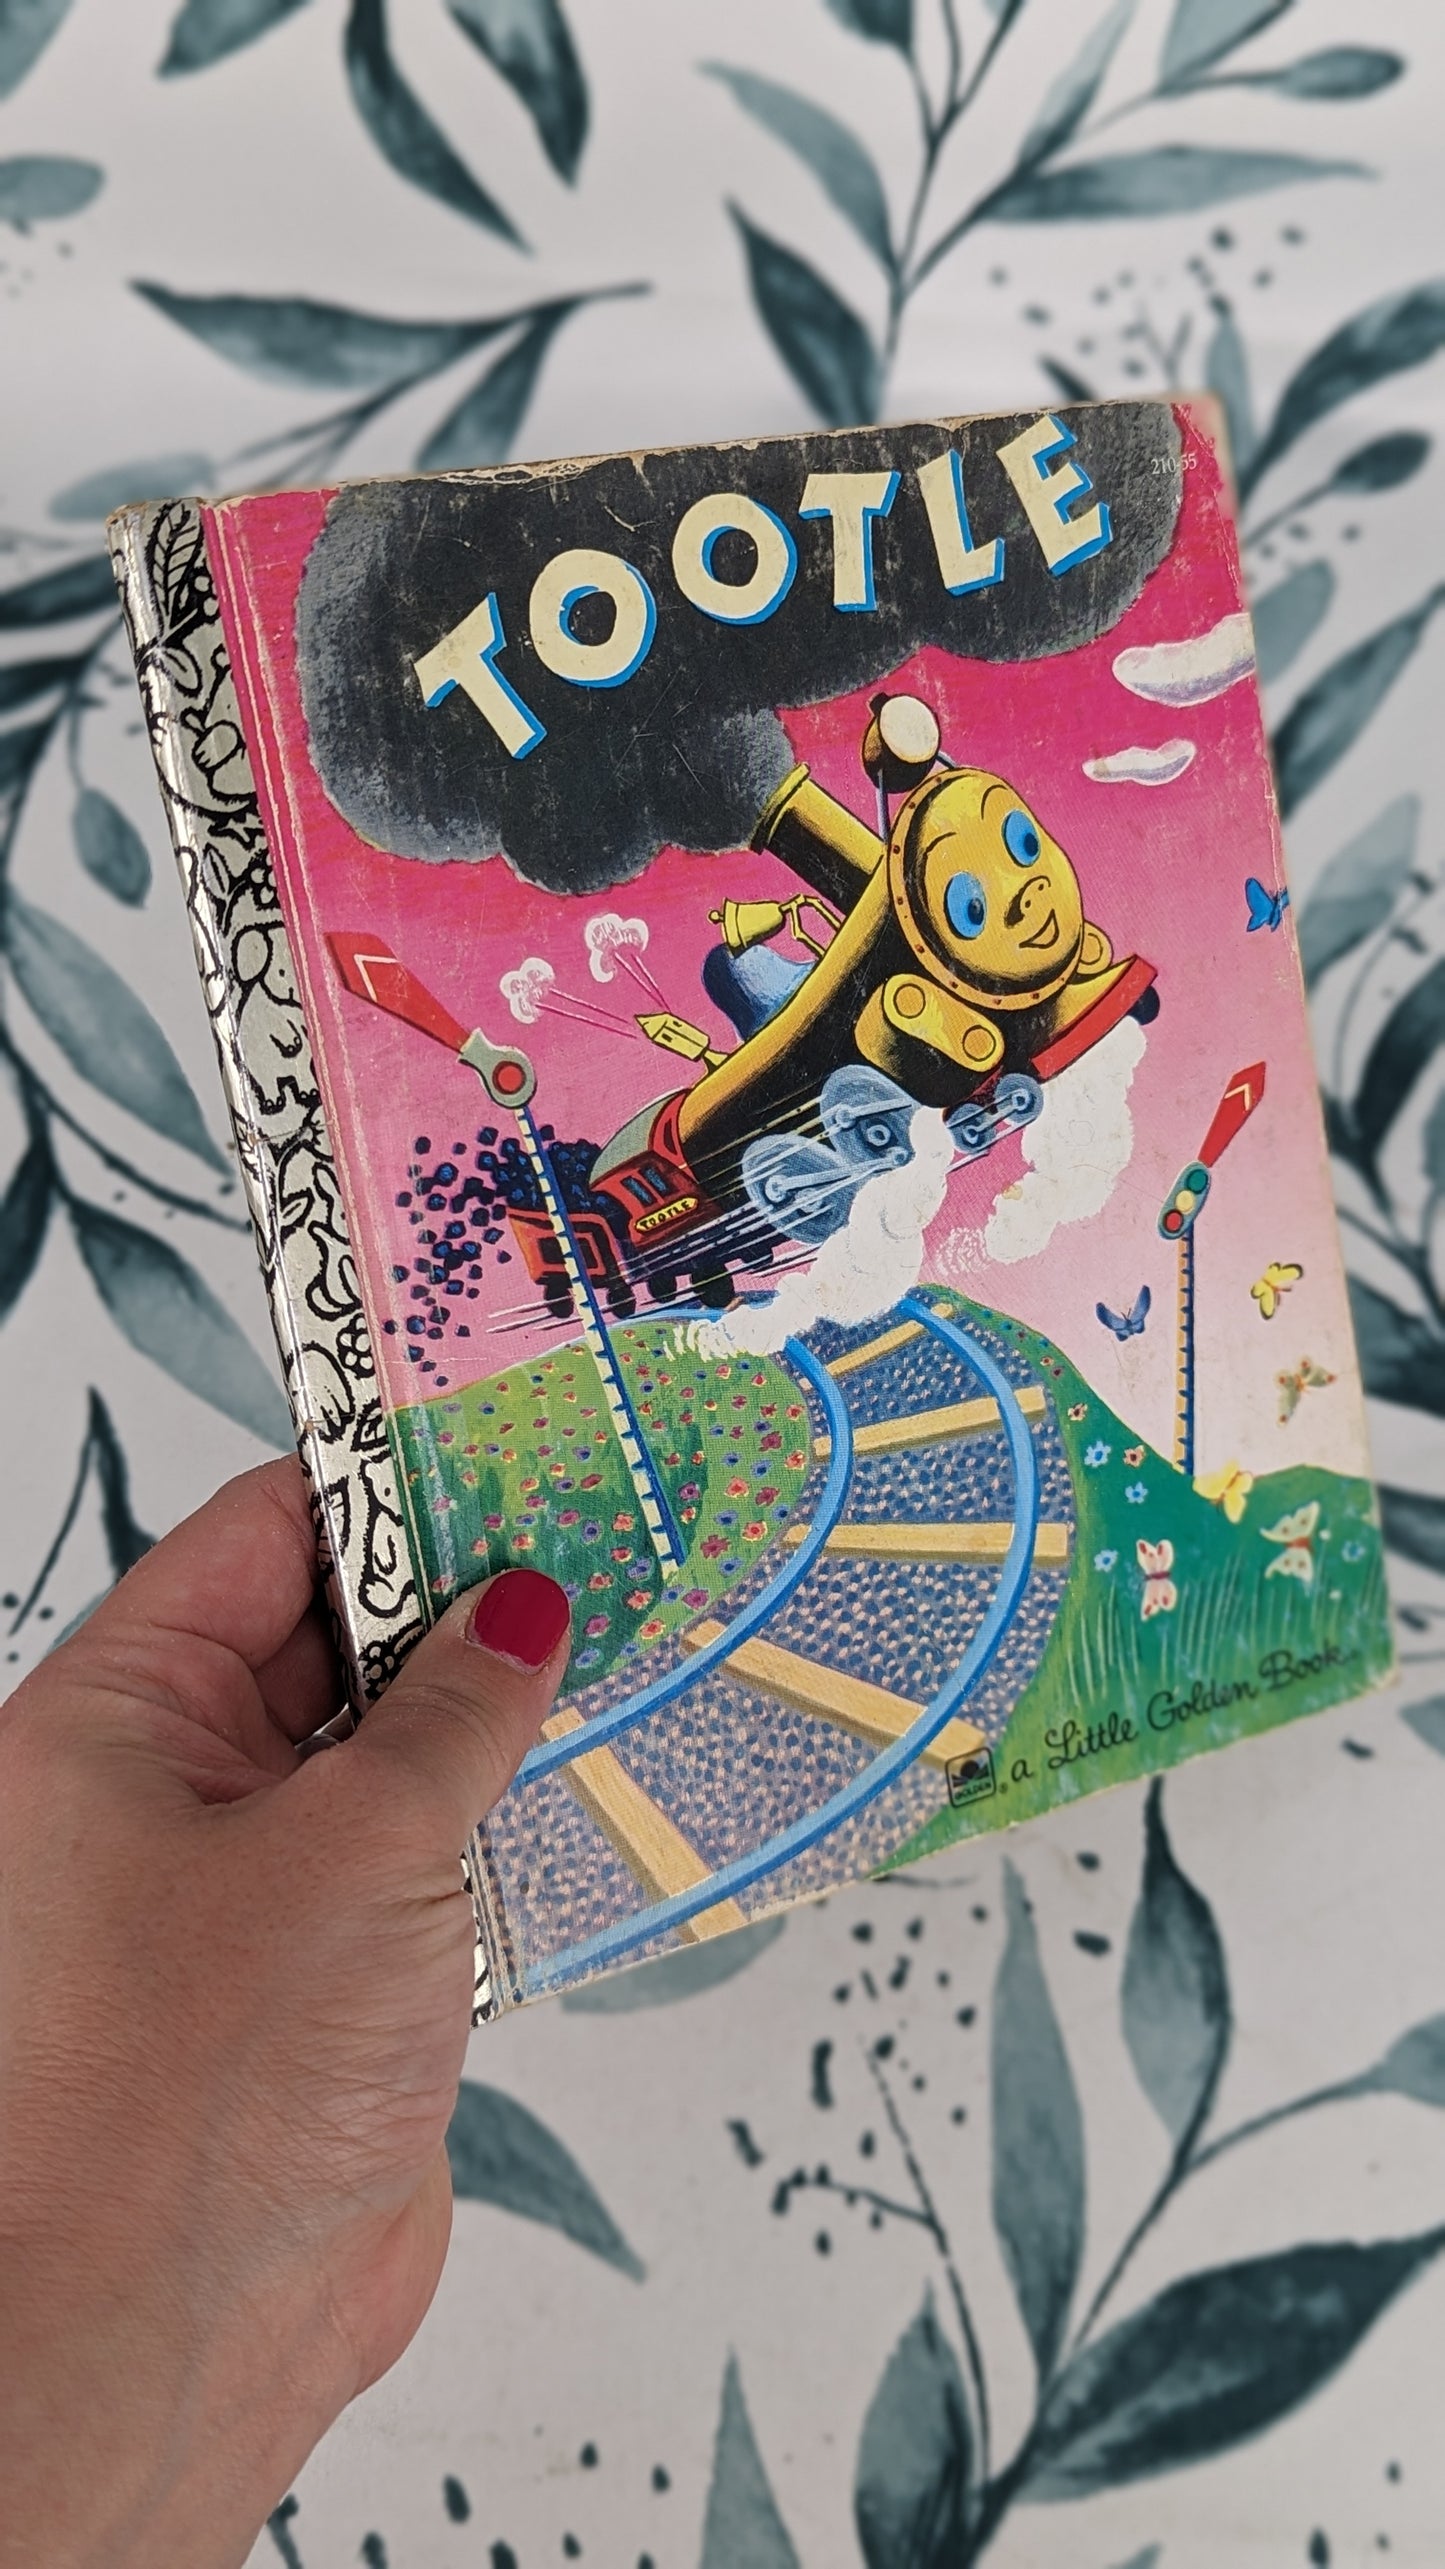 Little Golden Book: Tootle